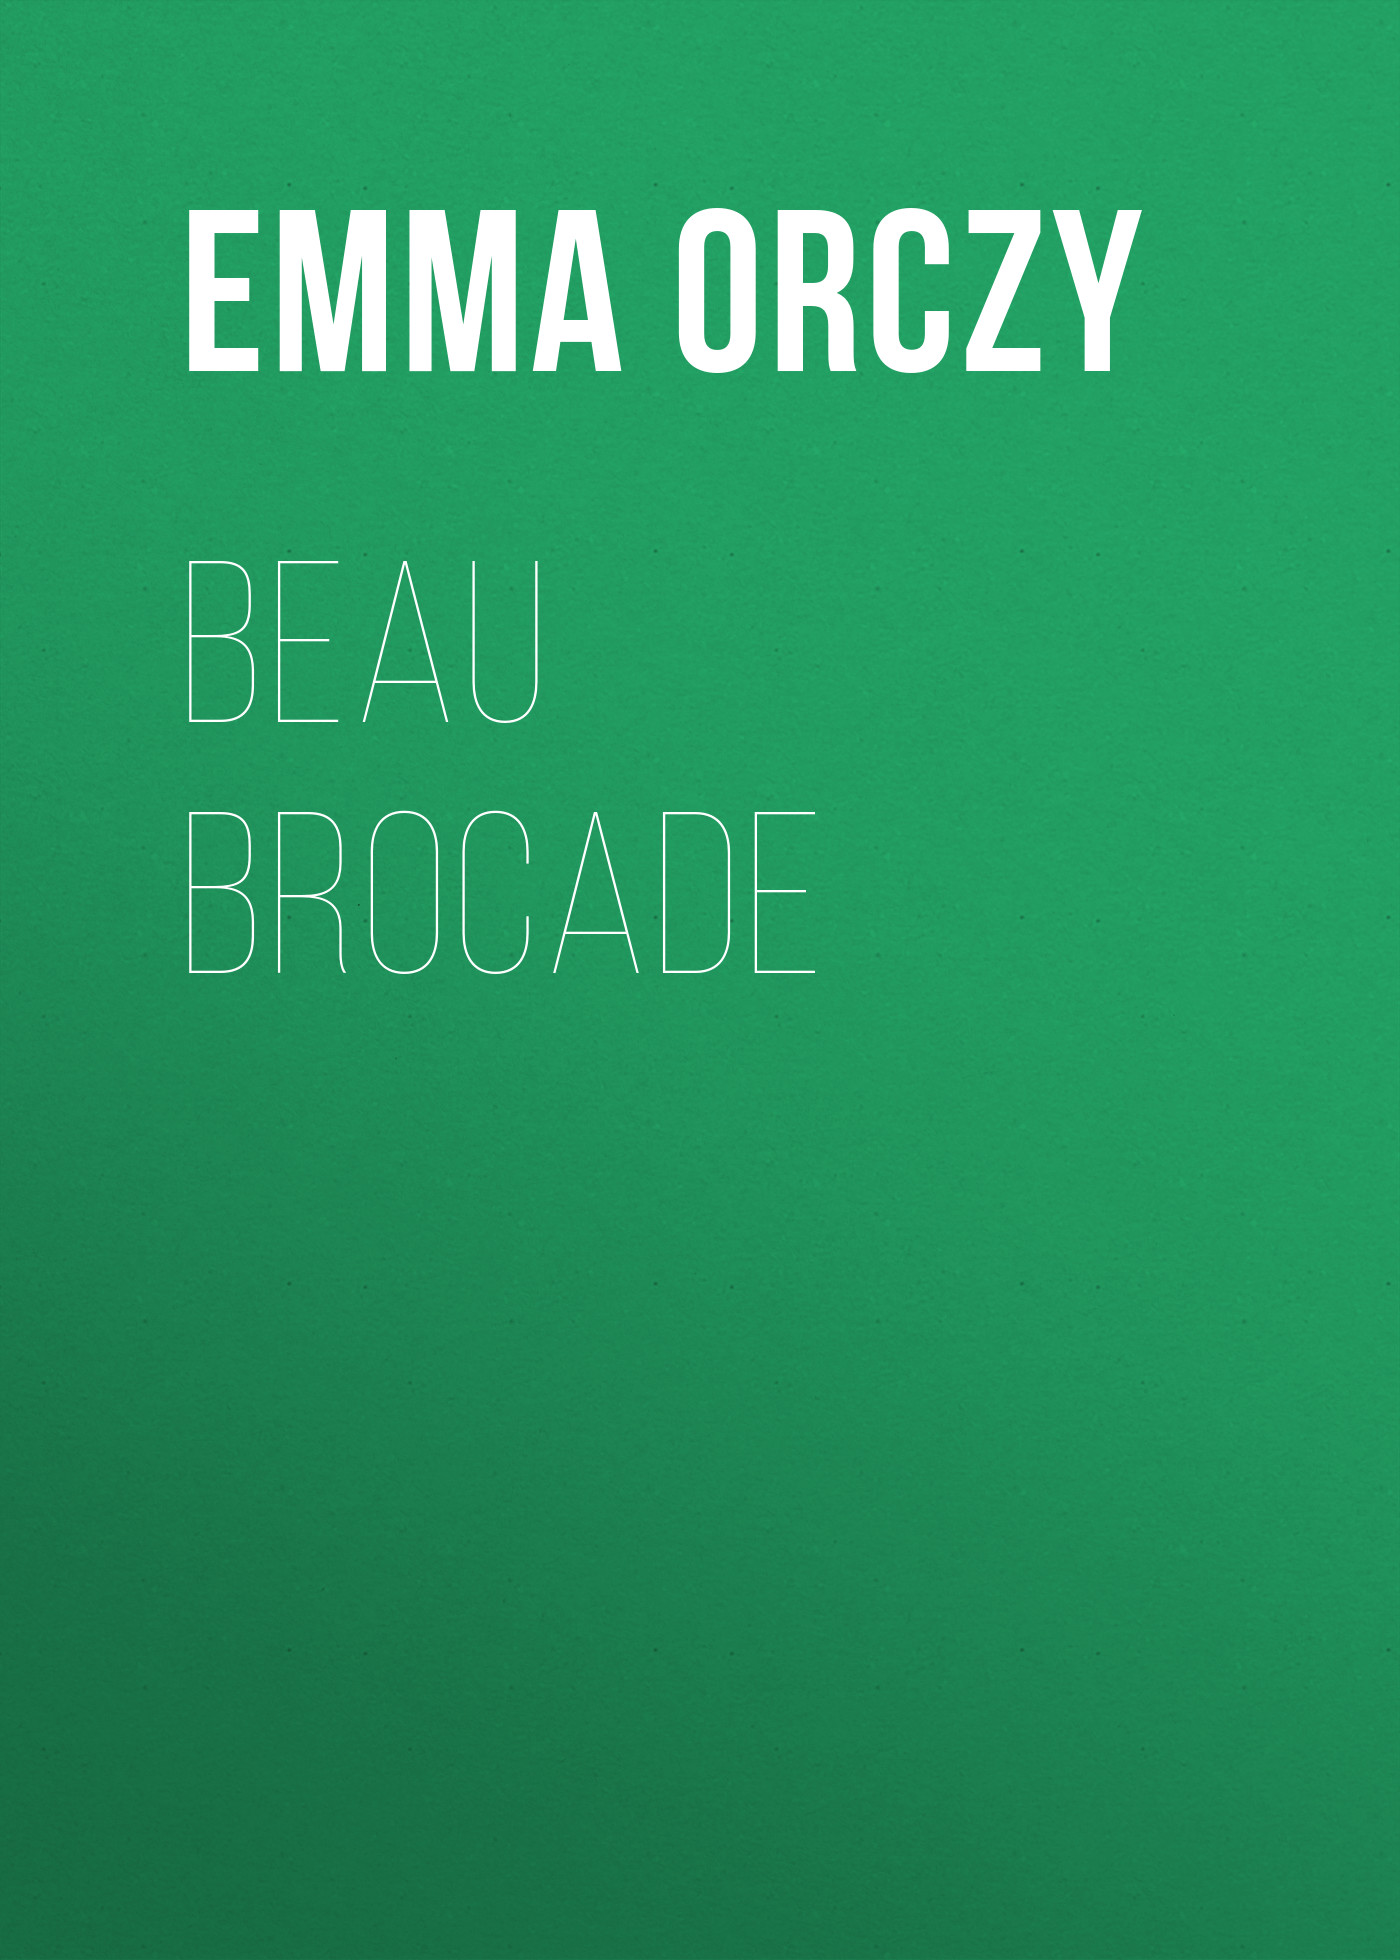 Книга Beau Brocade: A Romance из серии , созданная Emma Orczy, может относится к жанру Иностранные языки, Зарубежная классика. Стоимость электронной книги Beau Brocade: A Romance с идентификатором 23171819 составляет 5.99 руб.